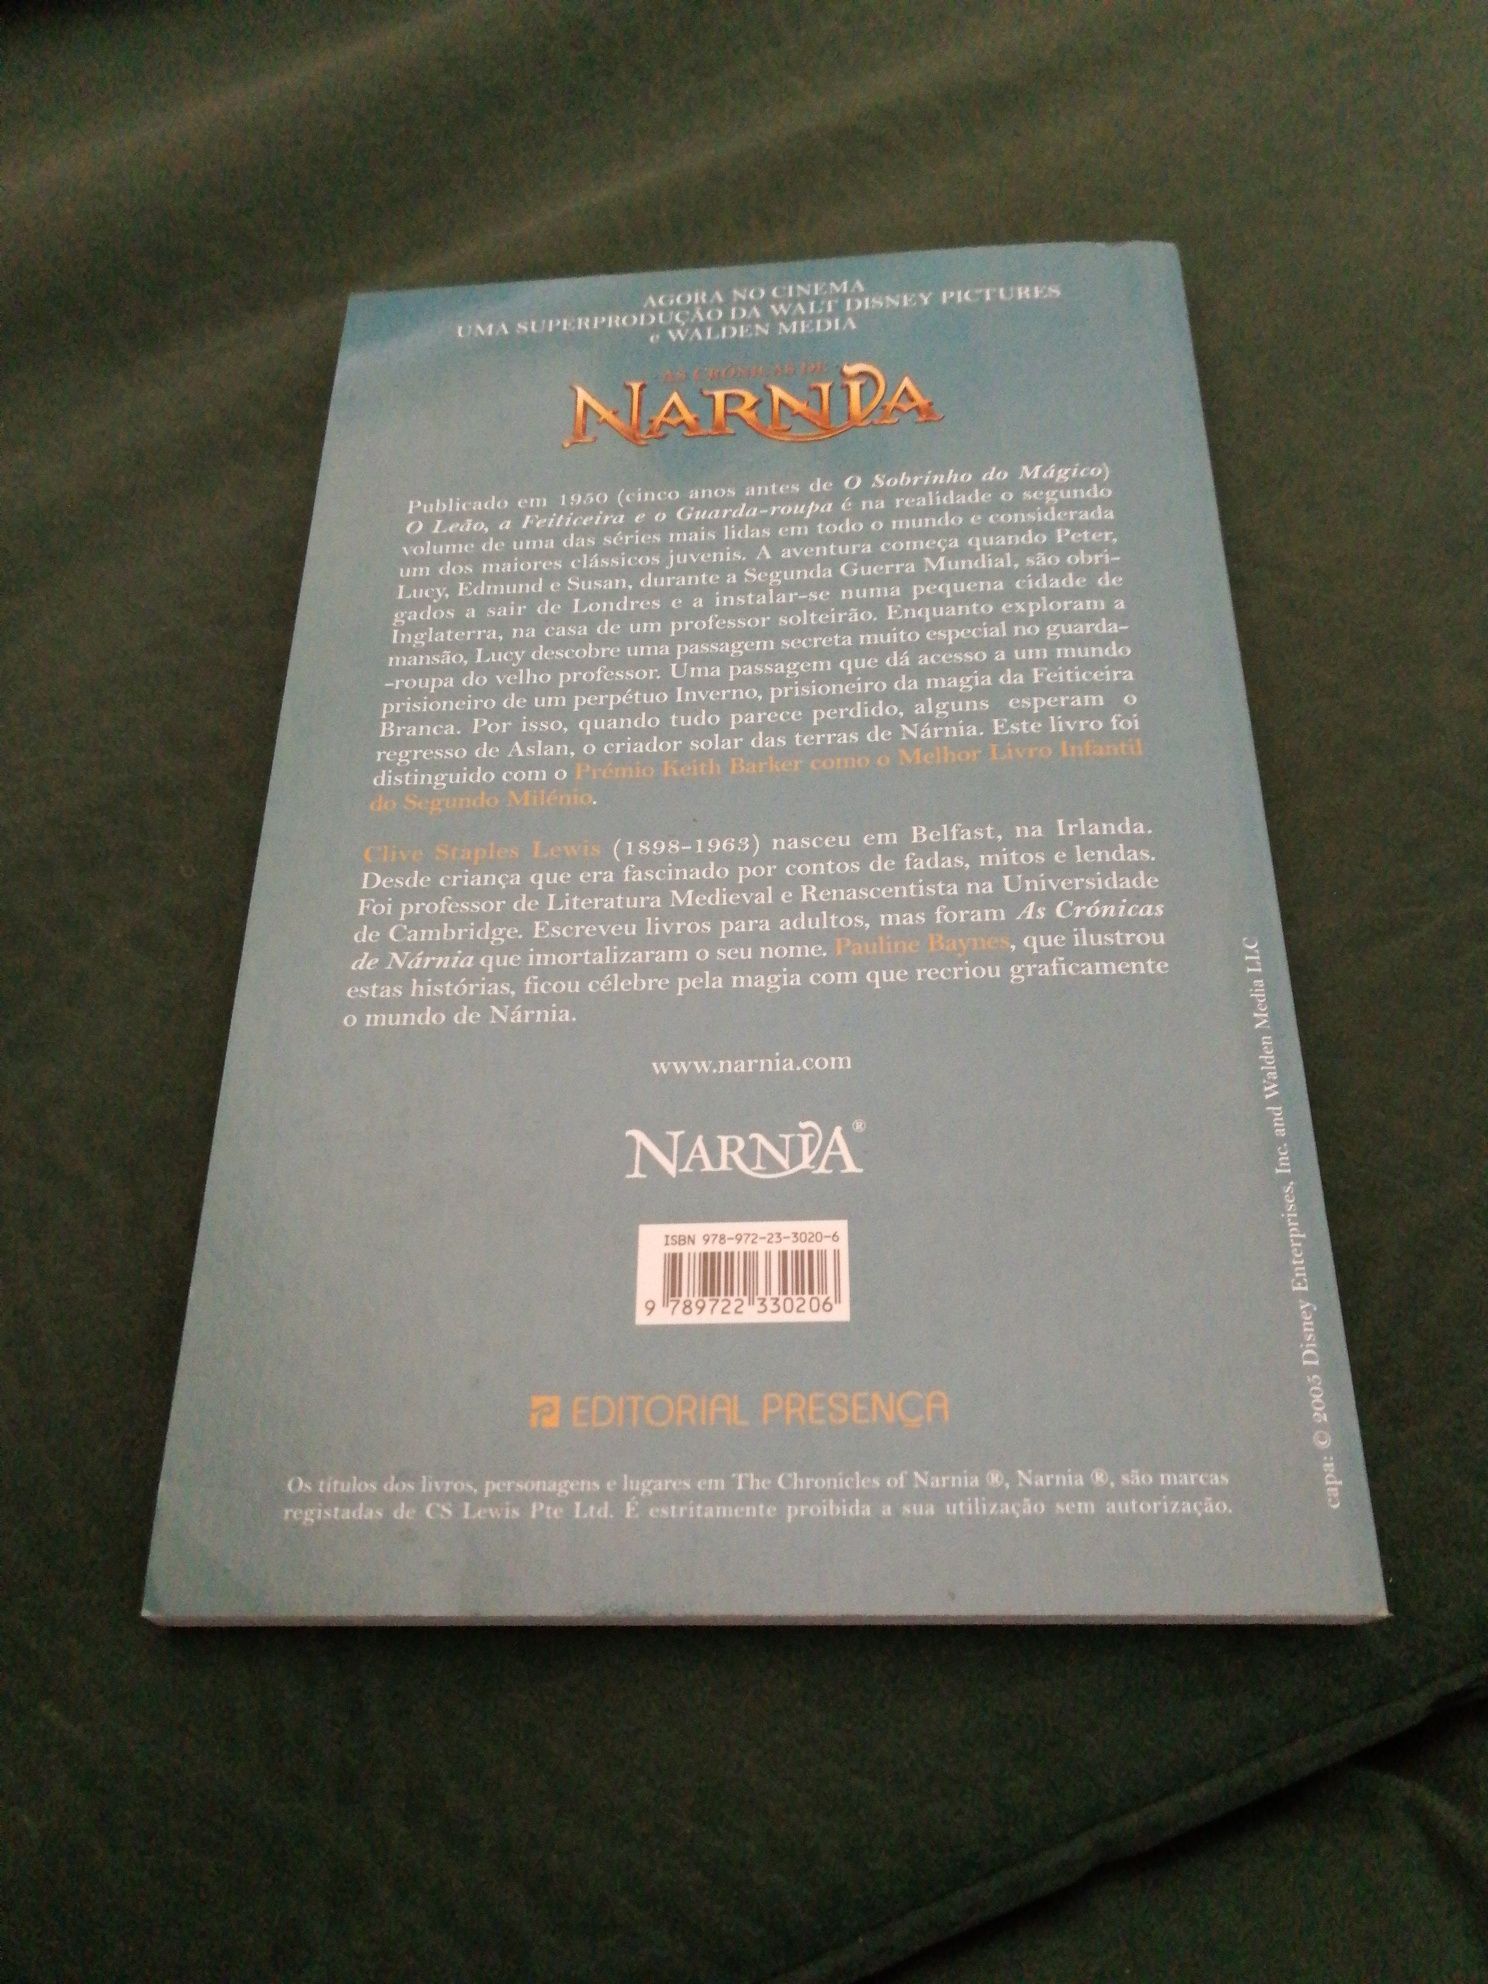 Livro "As Crónicas de Narnia - O Leão, a Feticeira e o Guarda-roupa"